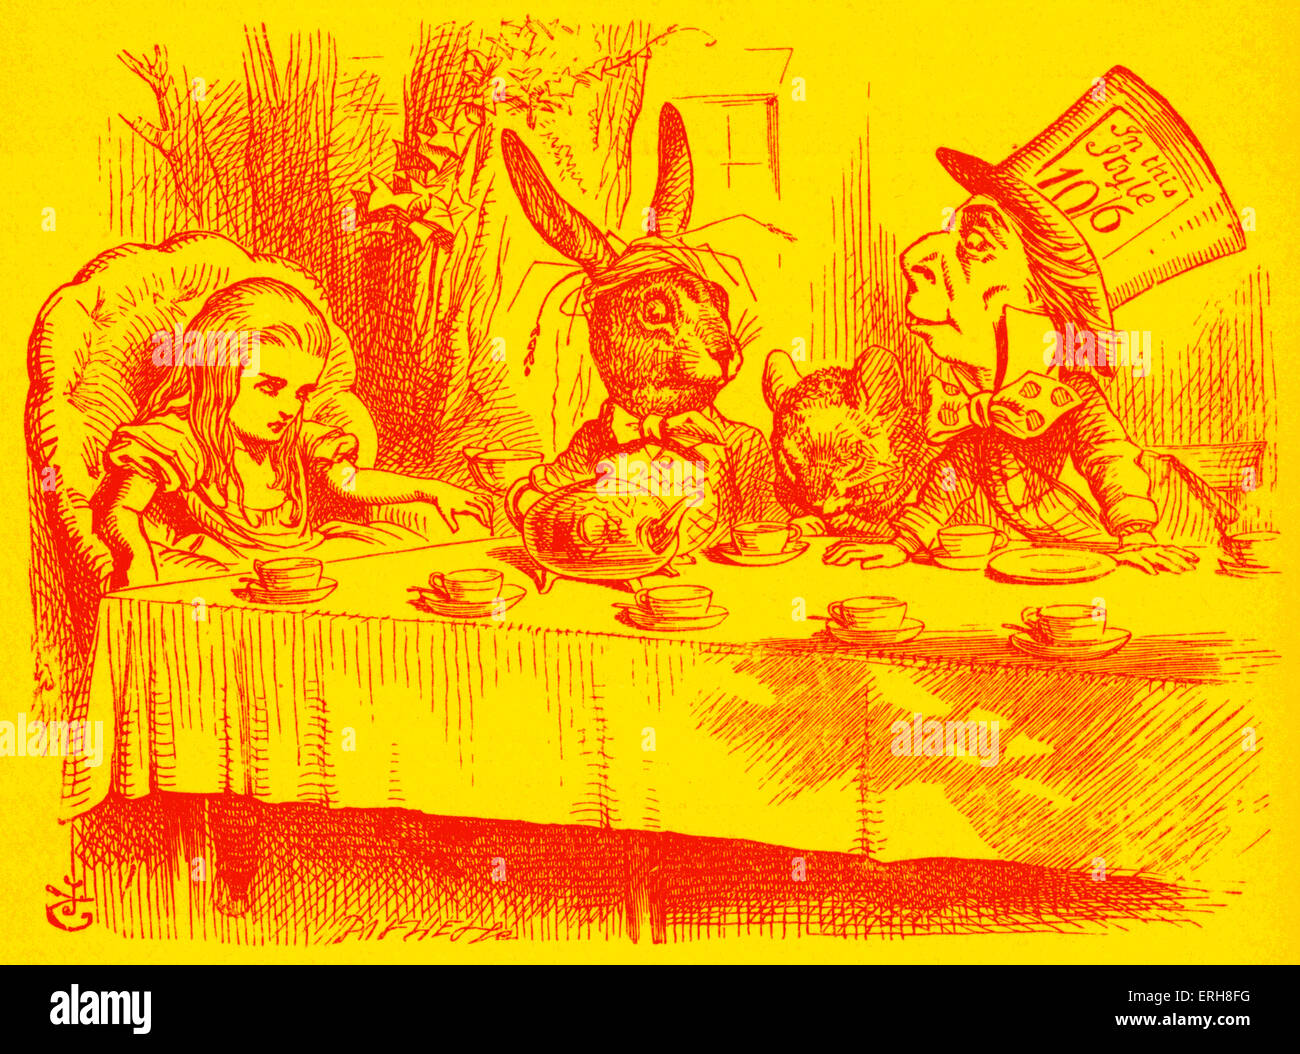 Alice au Pays des merveilles - Le Thé du Chapelier fou - du livre de Lewis Carroll (Charles Lutwidge Dodgson), anglais pour l'écrivain et mathématicien 27 janvier 1832- 14 janvier 1898. D'abord publié 1865. Illustrations de John Tenniel 1820-1914. Banque D'Images